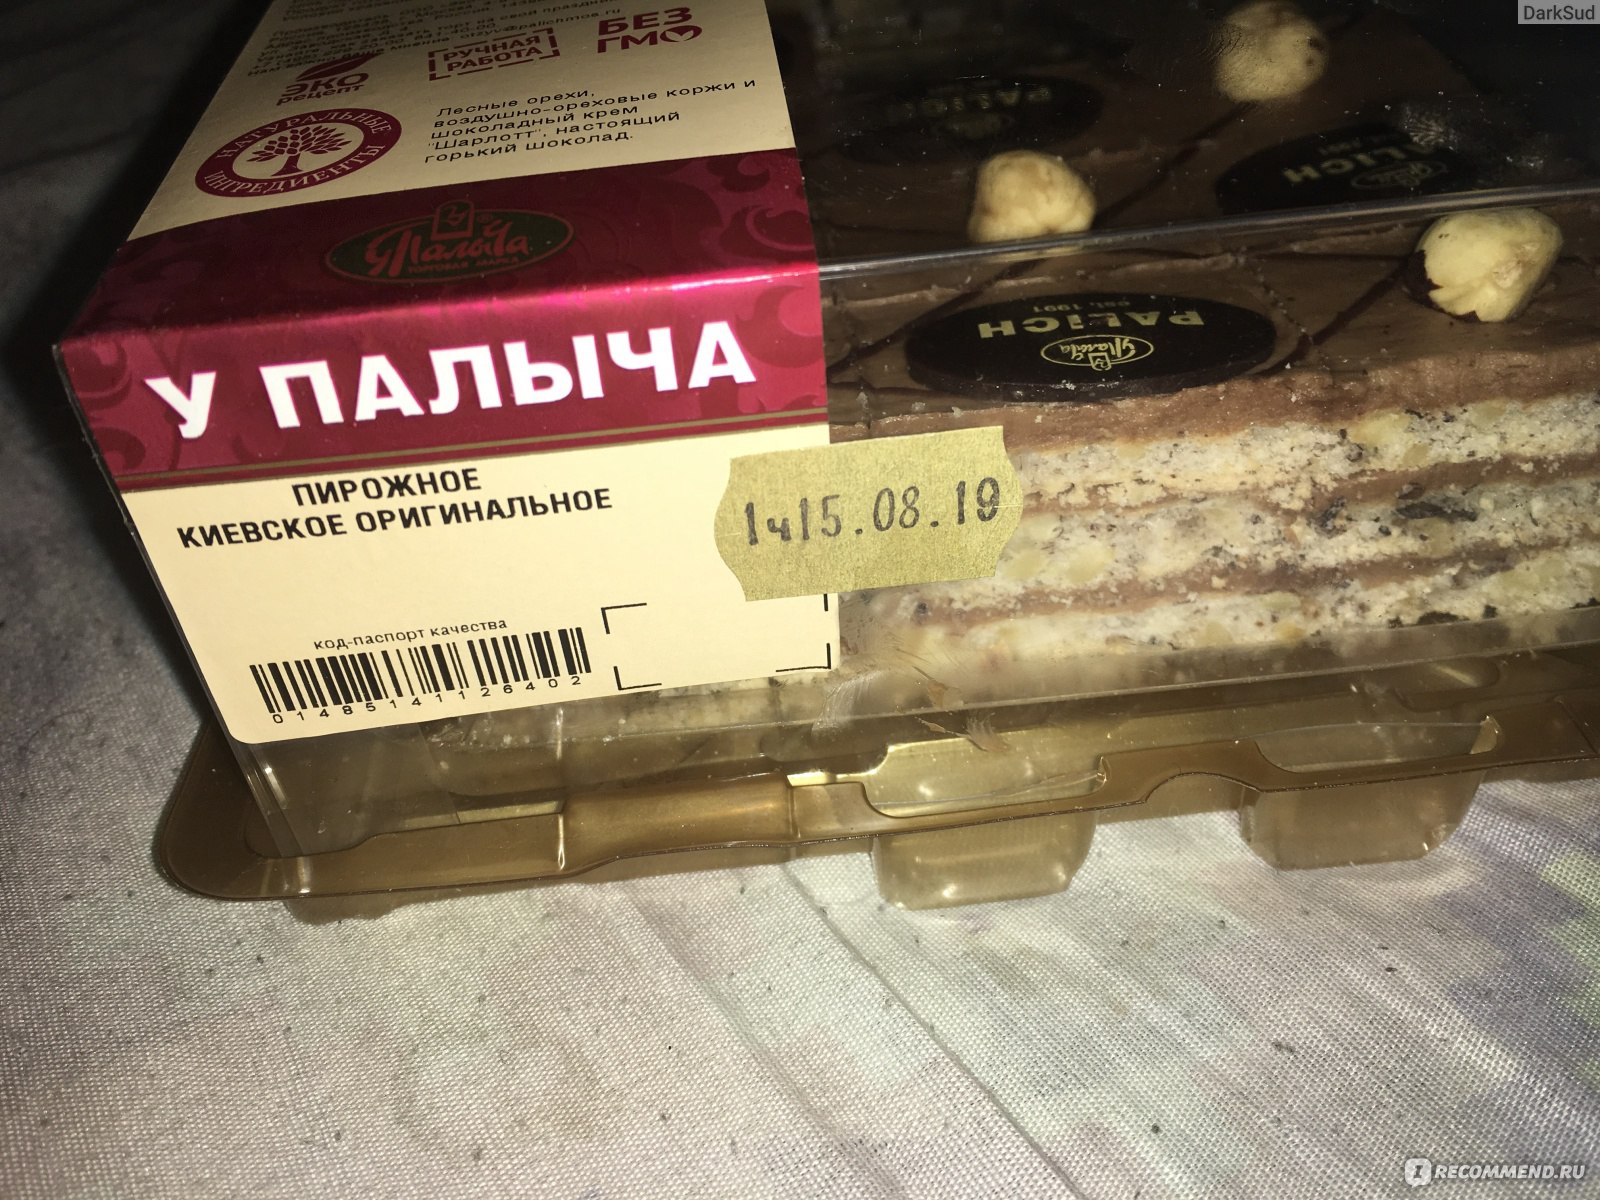 У Палыча киевские пирожные